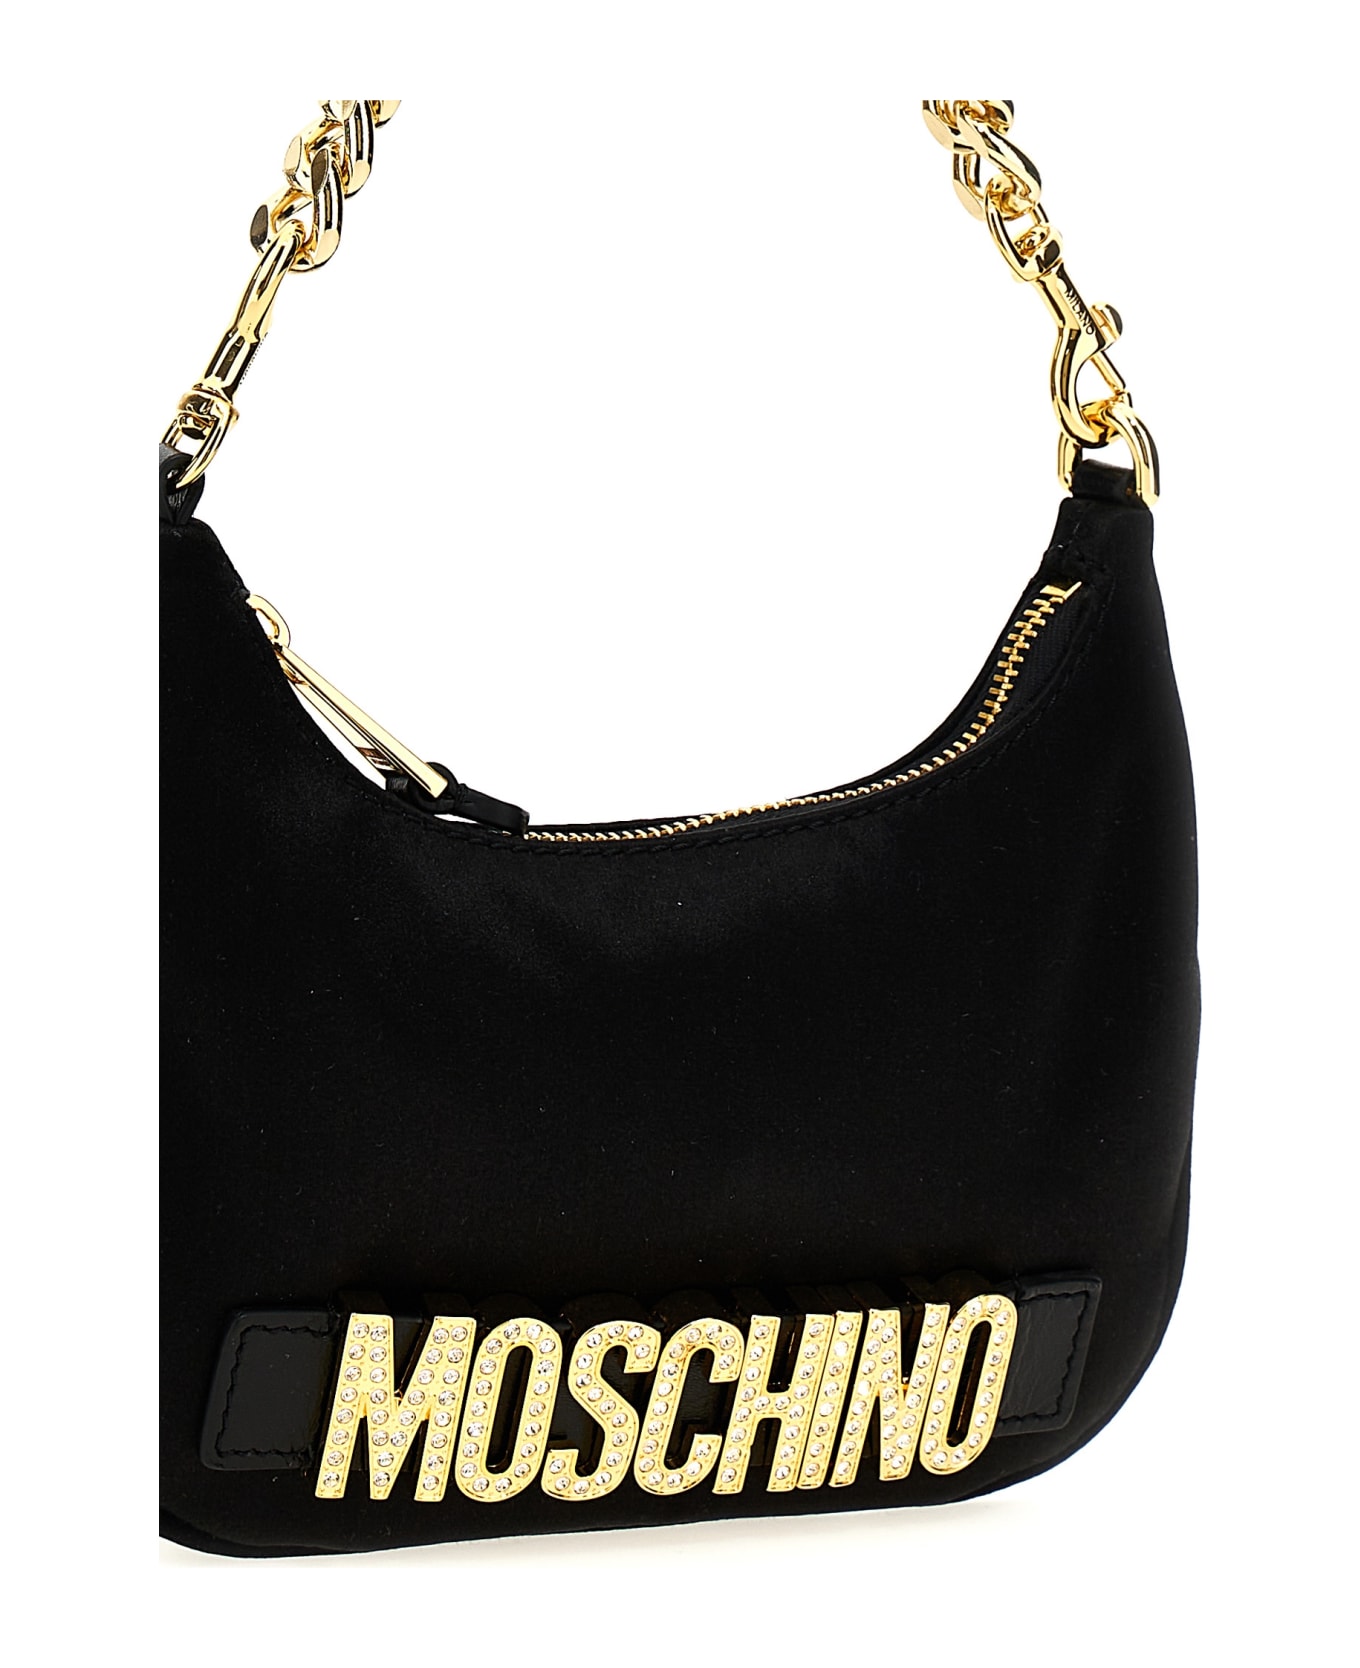 Moschino Logo Handbag - Nero